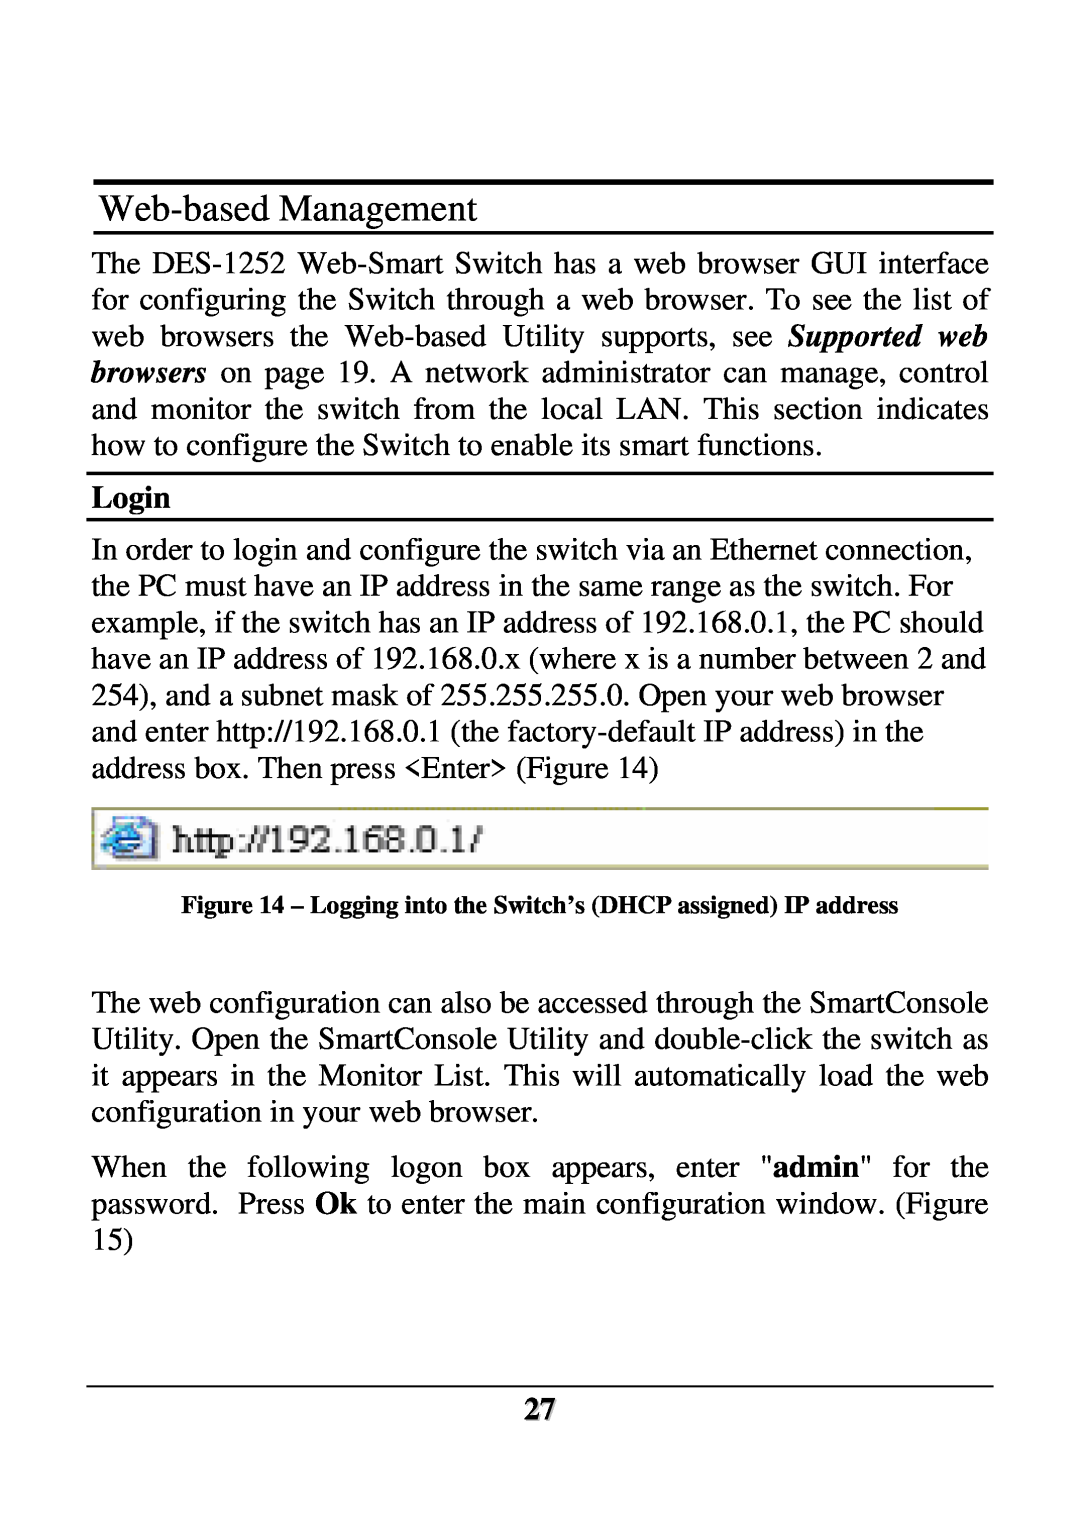 D-Link DES-1252 user manual Web-based Management, Login 